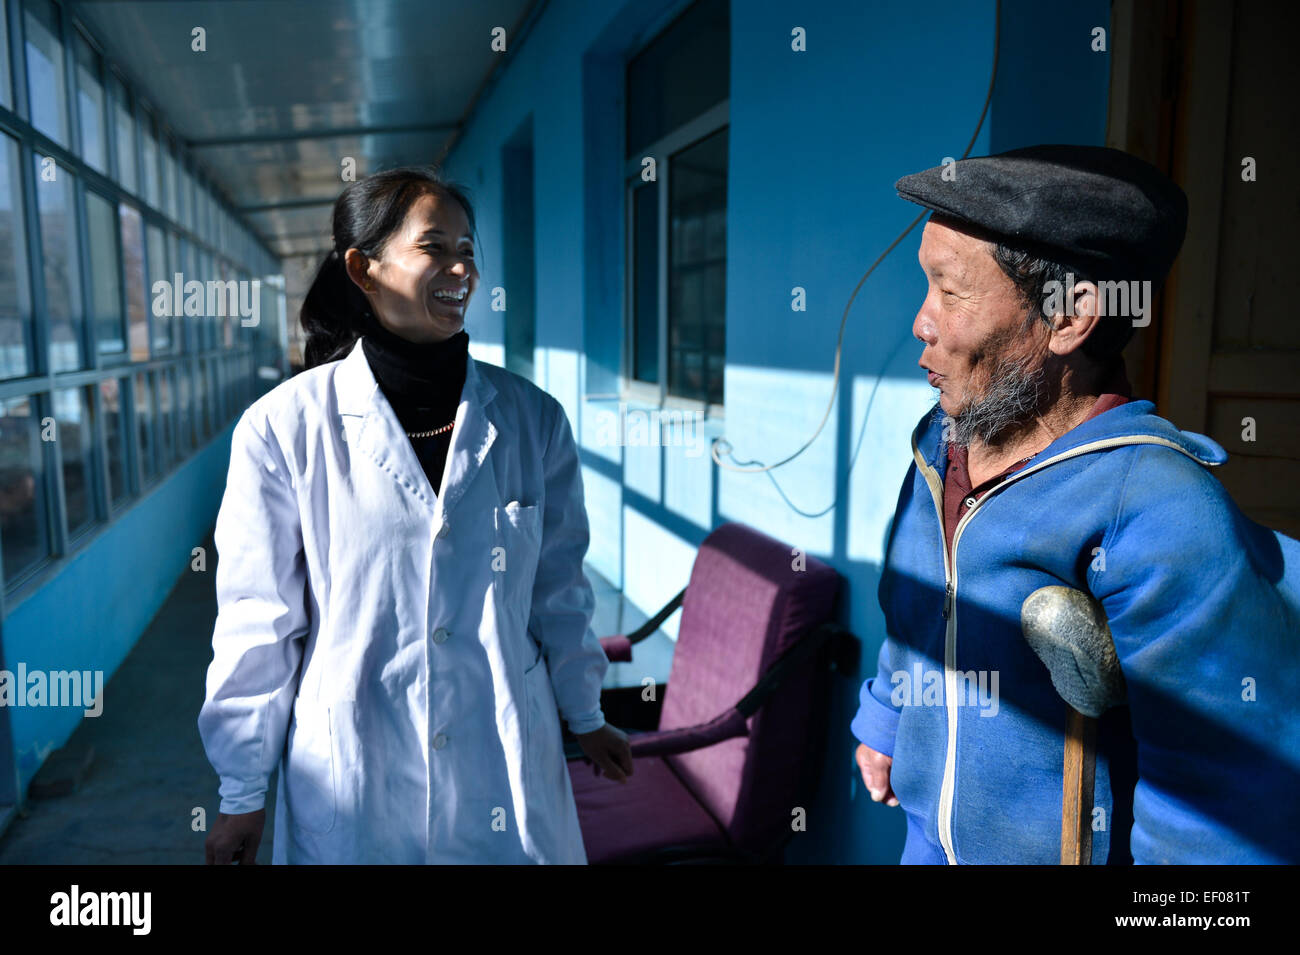 150124) -- XINING, 24 janvier 2015 (Xinhua) -- Zhang Qingyun (L), infirmière  à Tongren le contrôle et la prévention des maladies chroniques, de  l'hôpital parle avec Wen Changtai patient à l'hôpital de